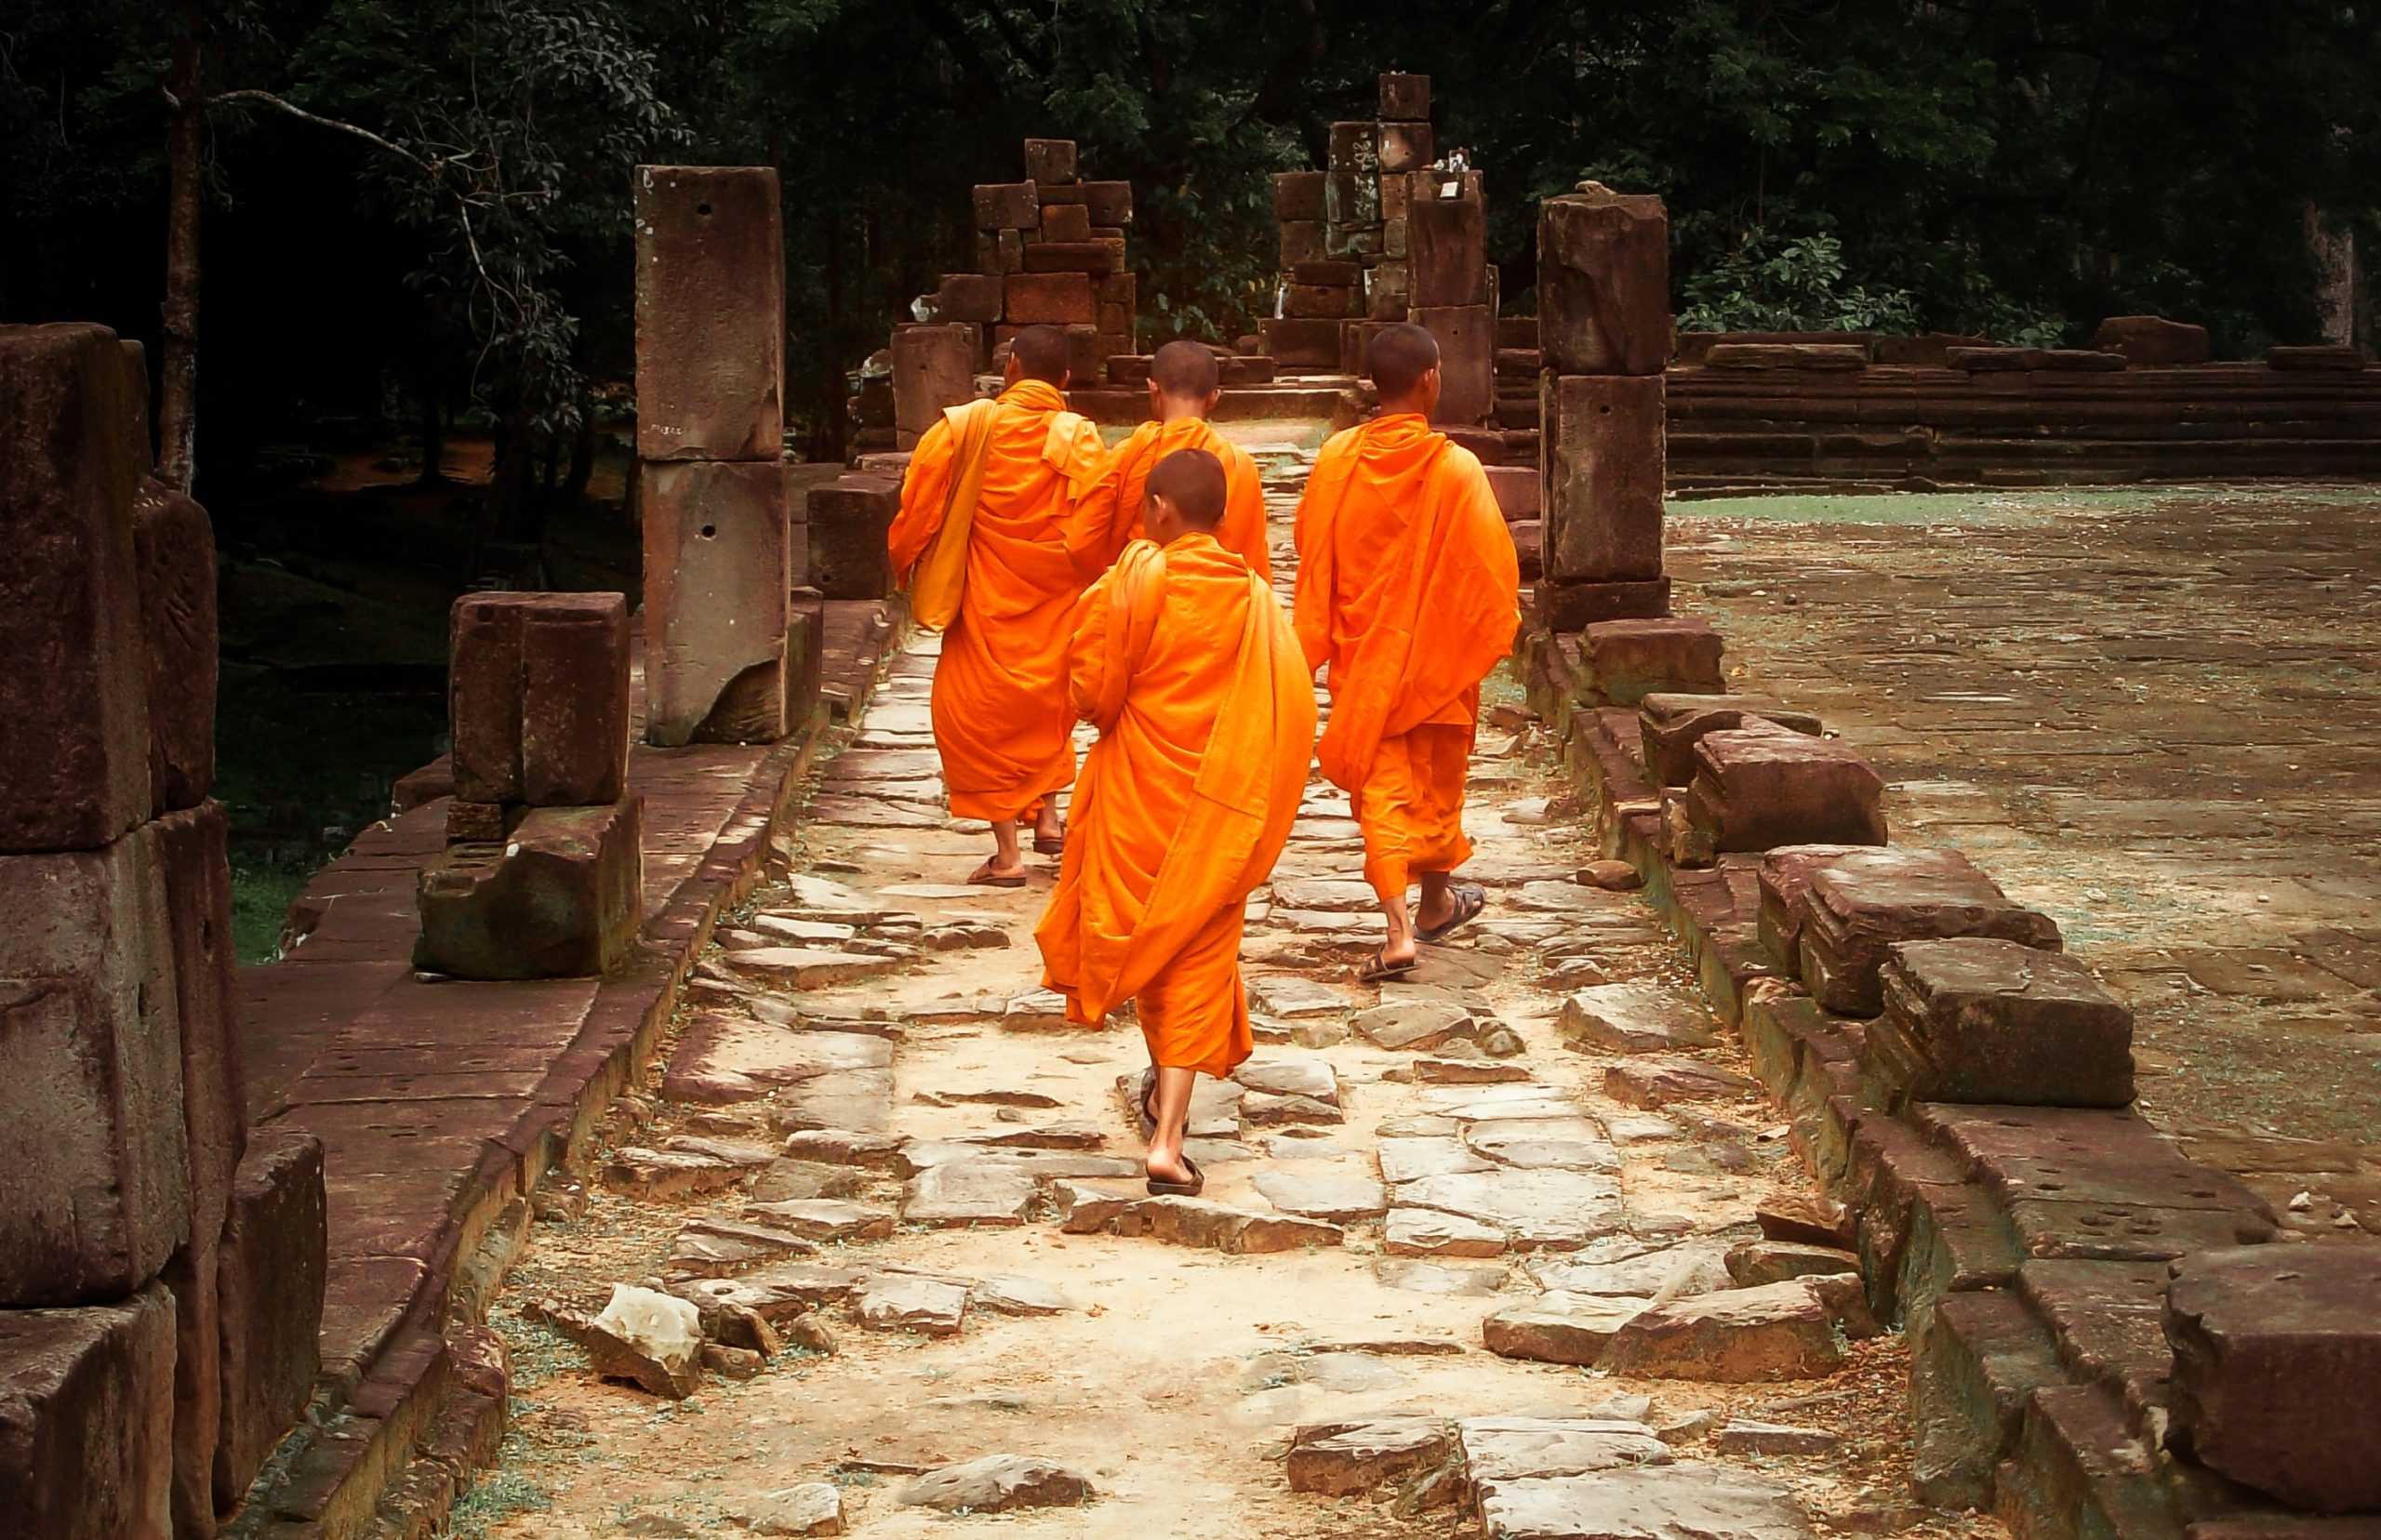 Βουδιστές μοναχοί βρέθηκαν θετικοί σε τεστ ναρκωτικών σε ναό της Ταϊλάνδης. Μπήκαν όλοι σε κέντρο απεξάρτησης